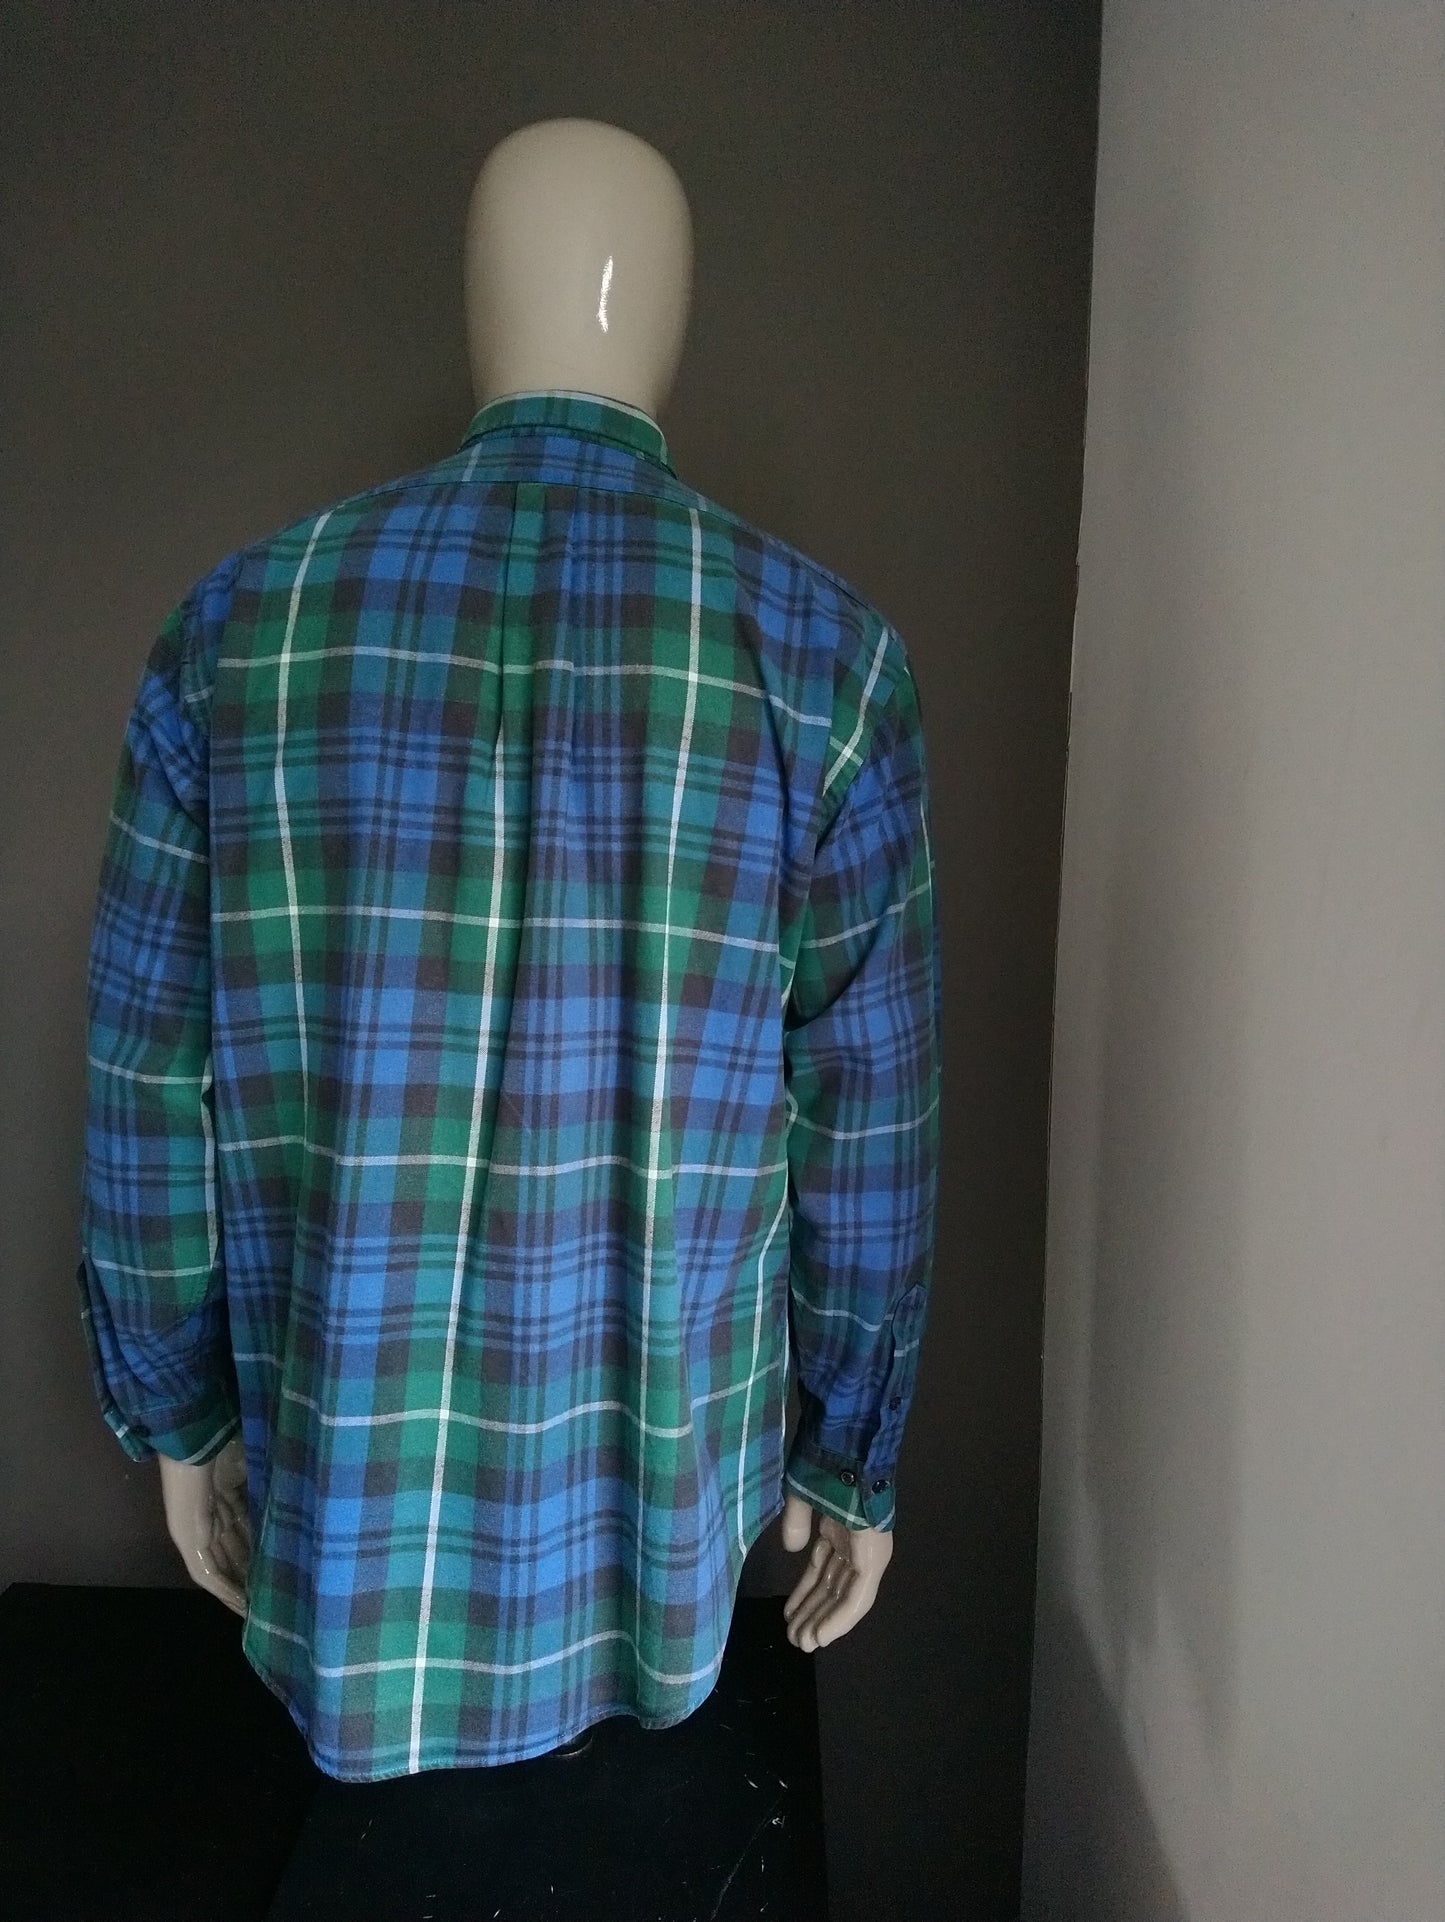 Vintage Giordano overhemd. Groen Blauw Zwart geruit. Maat XL. Dikkere stof.